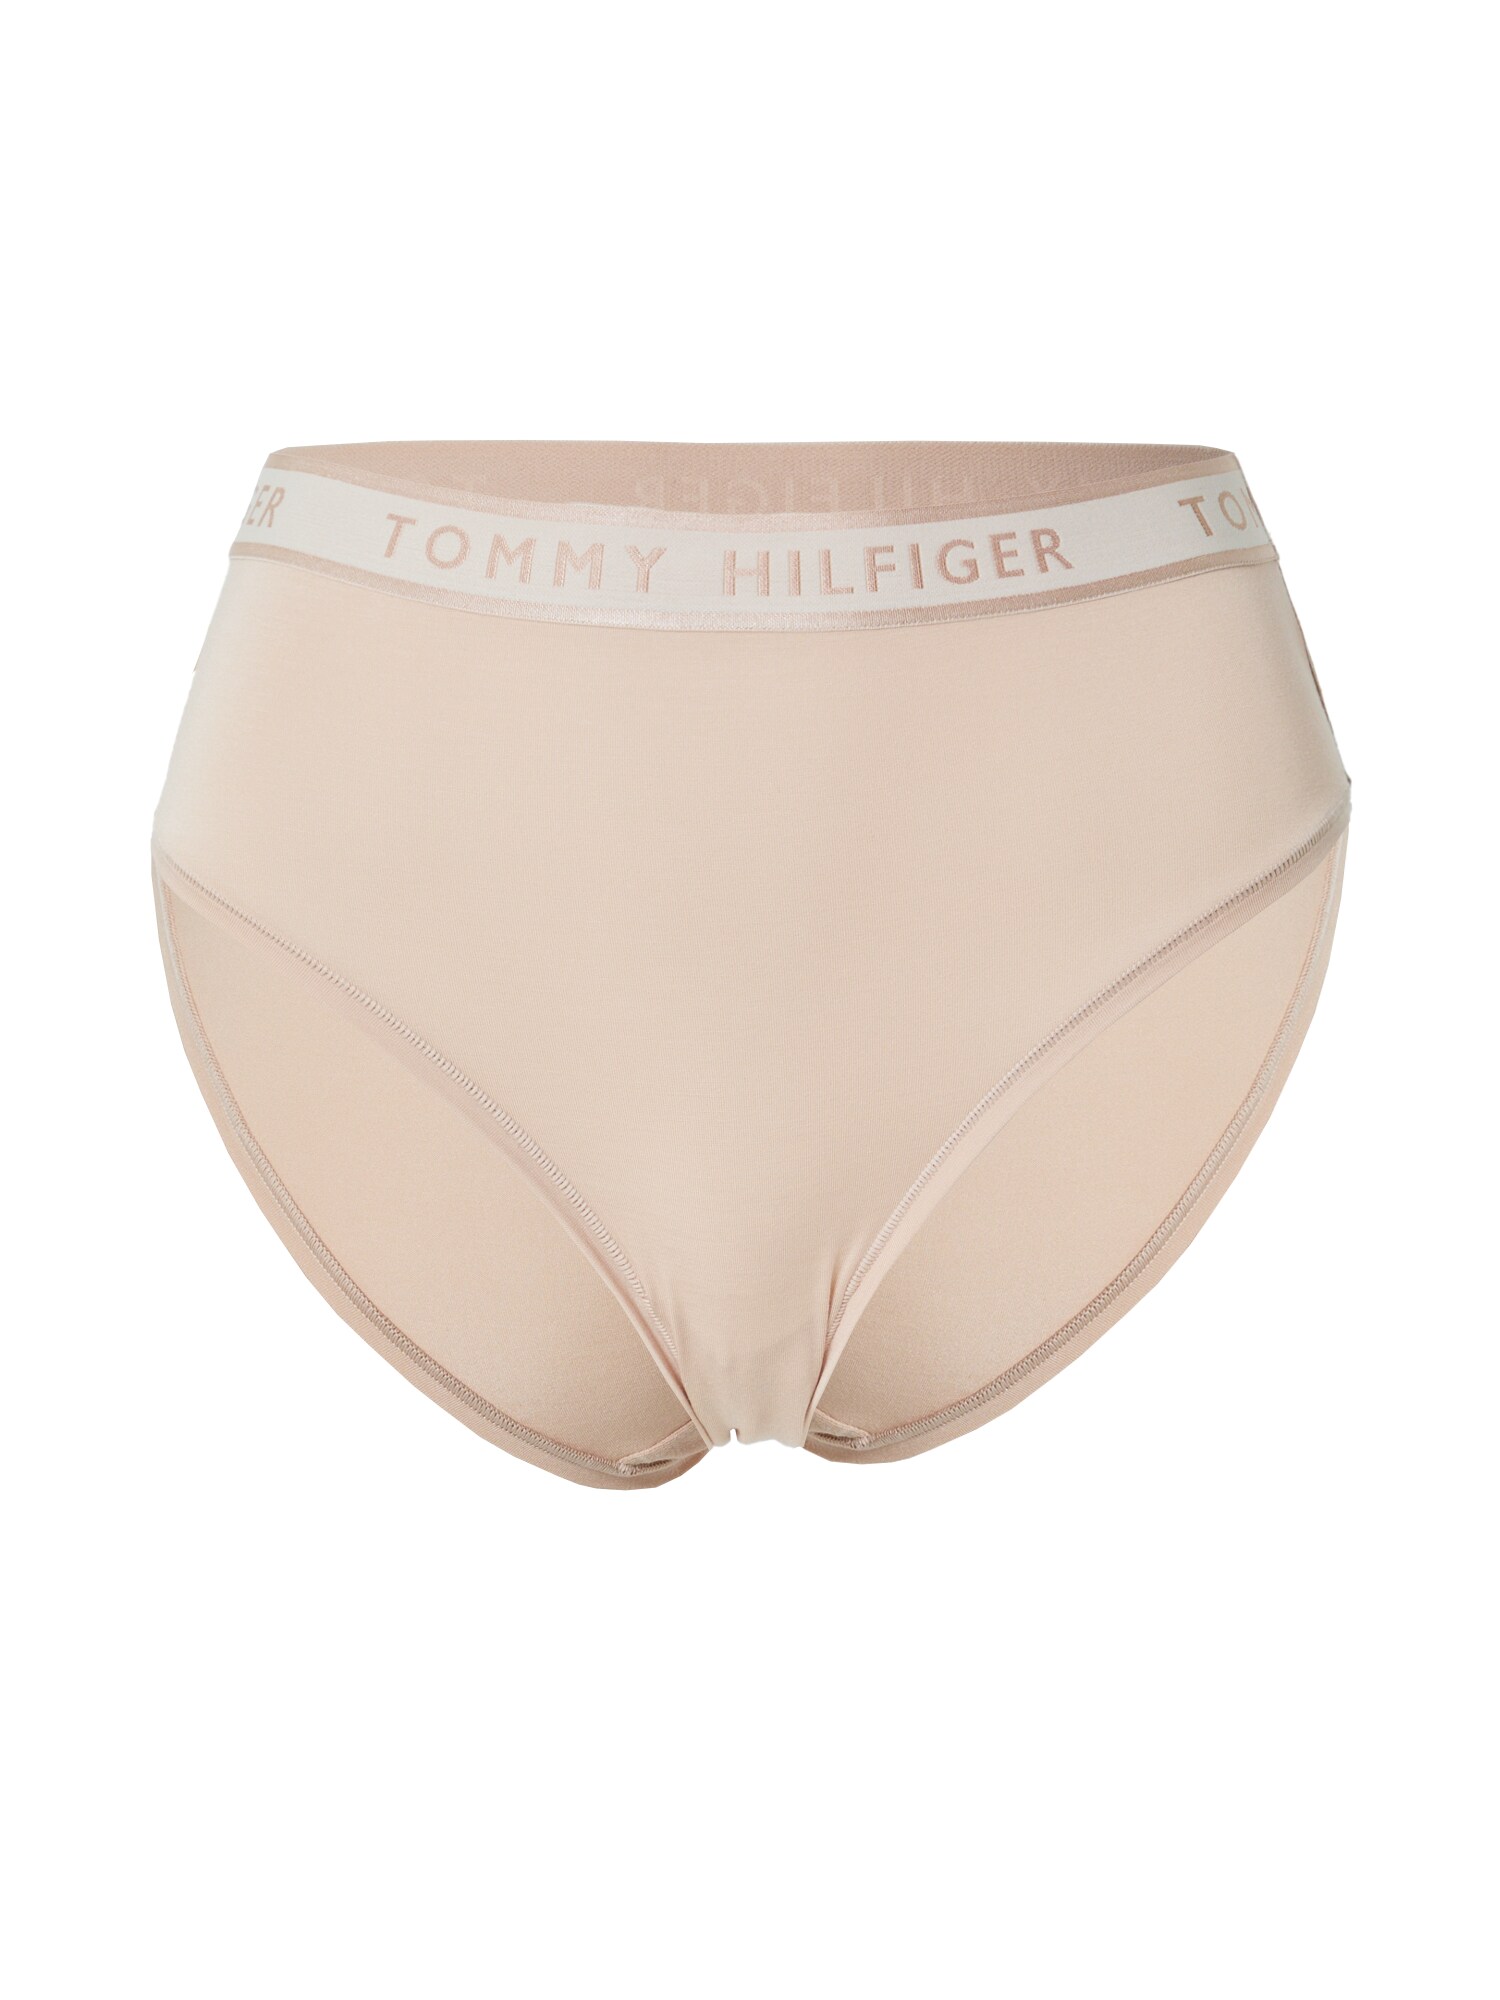 Tommy Hilfiger Underwear Spodnje hlačke  pastelno roza / bela